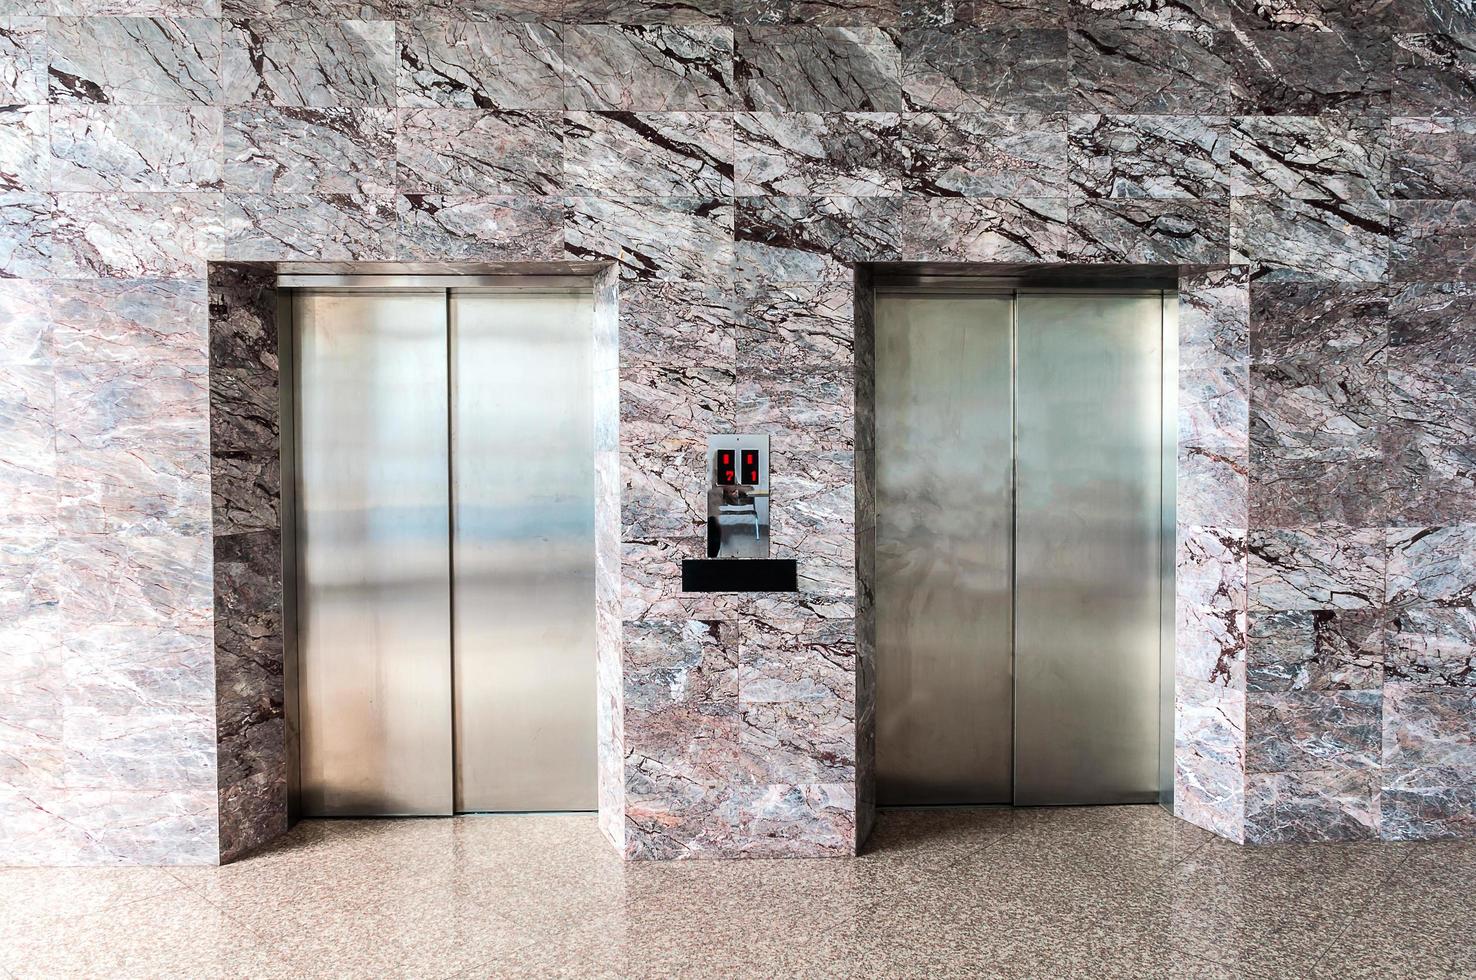 Elevator doors in a building photo